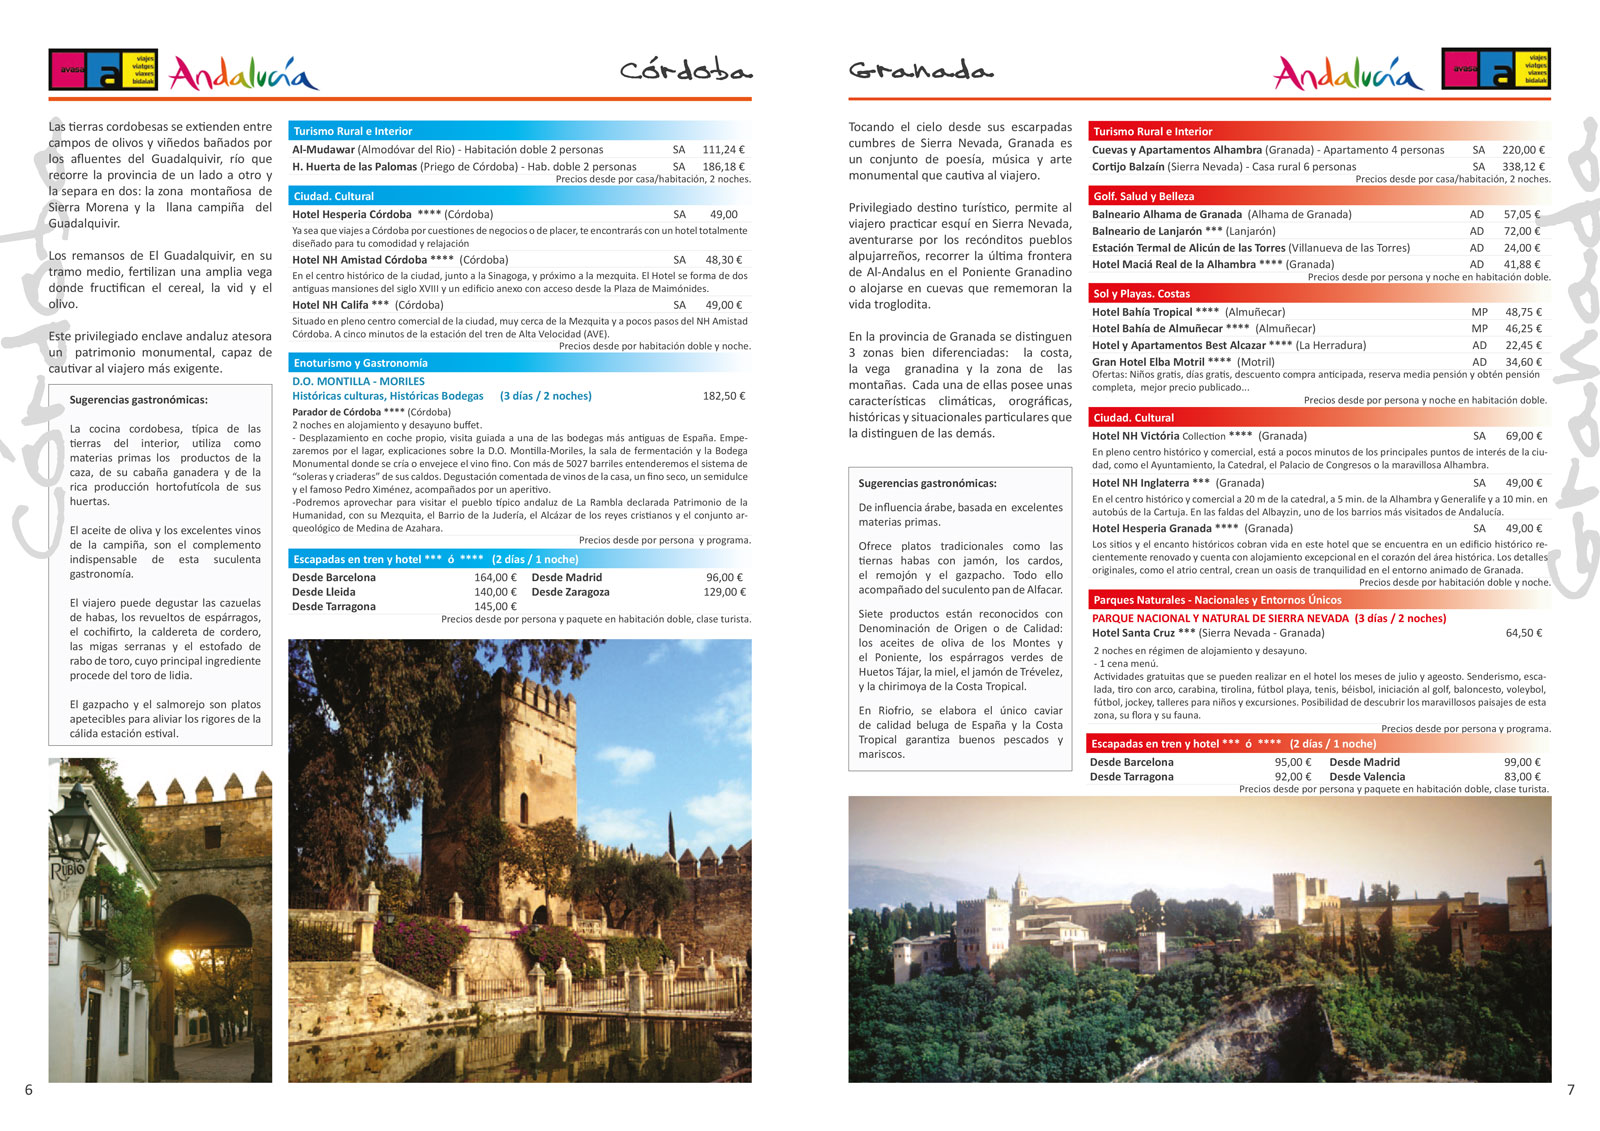 Diseño gráfico y creativo de maquetación de catálogos de viajes para agencias de viajes, tour operadores y patronatos de turismo